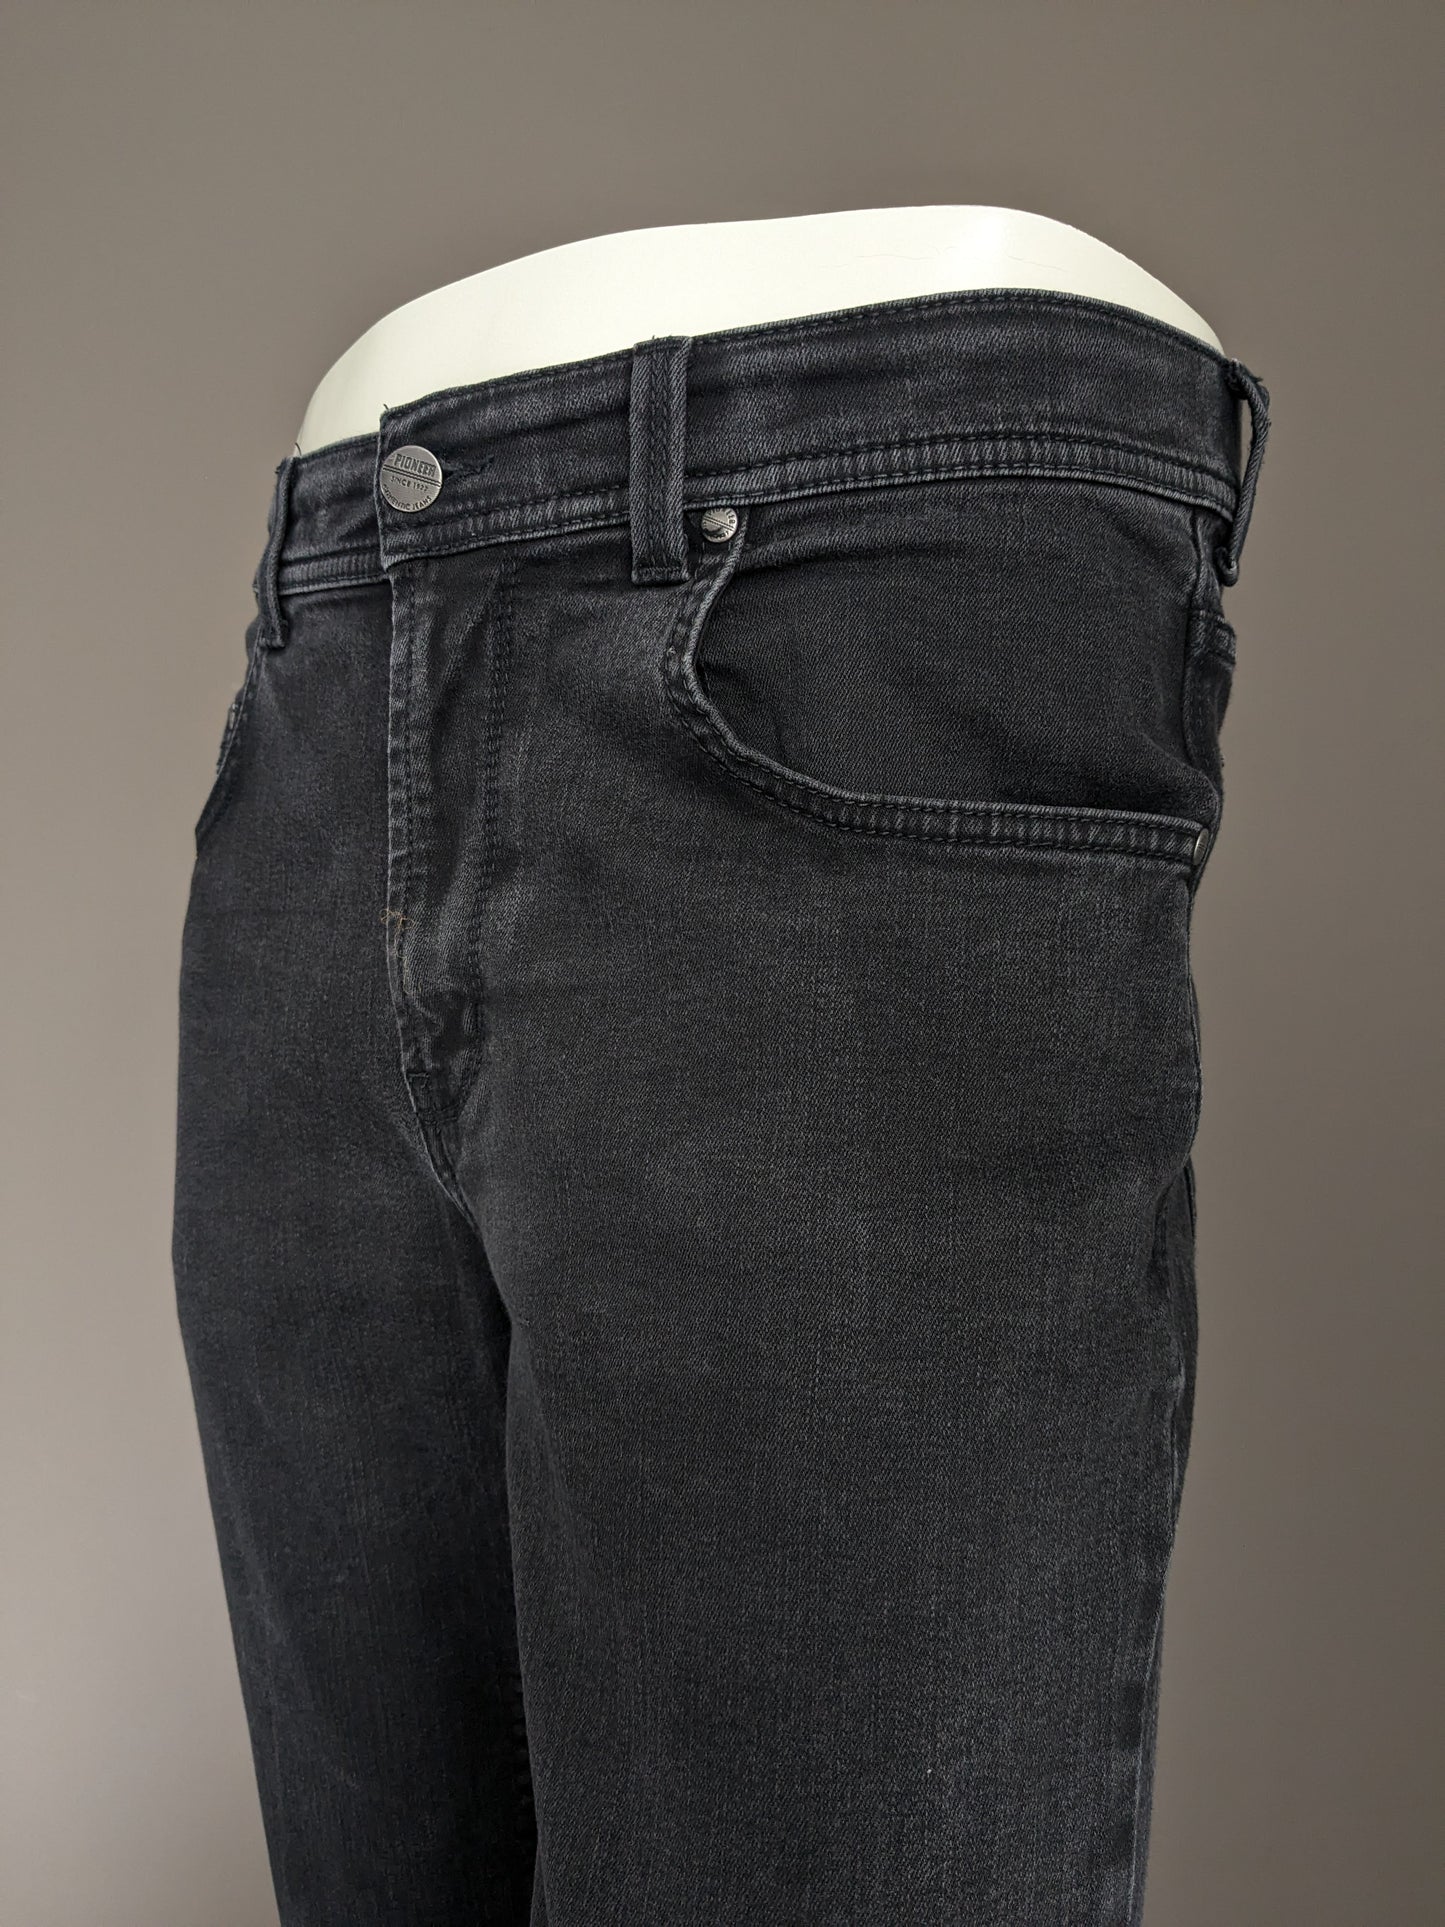 Jeans pionniers. Couleur noire. Tapez Rando. Megaflex. Taille W33 - L30. (raccourci)